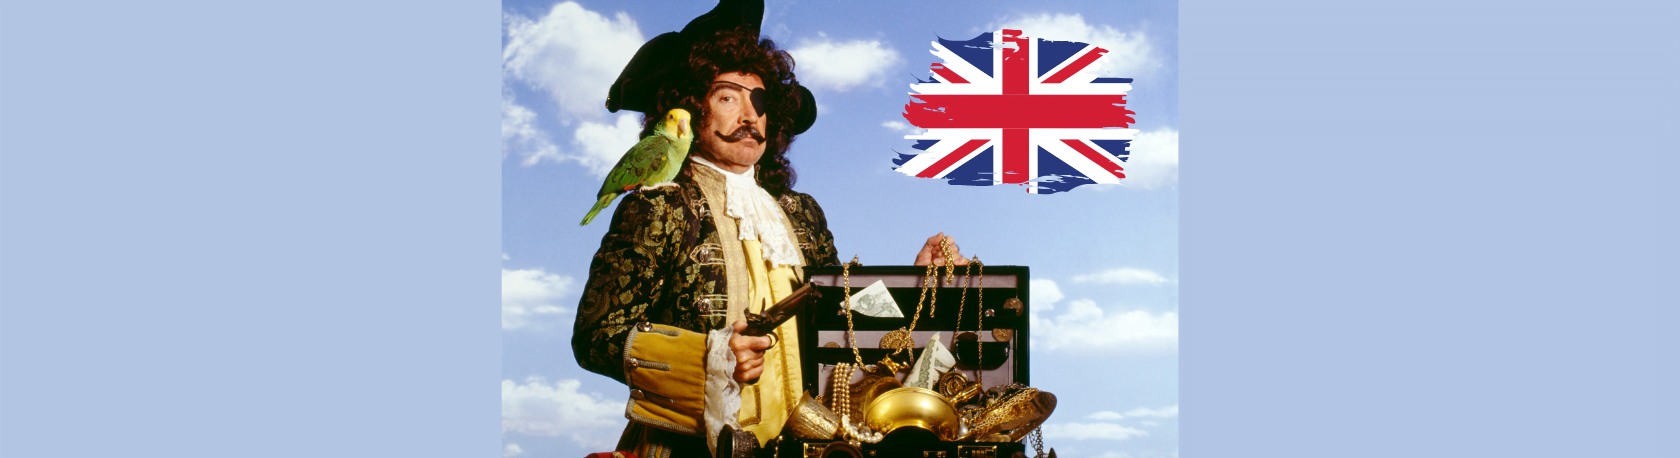 ¿Sabías que Francis Drake fue un pirata inglés que saqueó varios asentamientos españoles en las Américas? - Easy Español